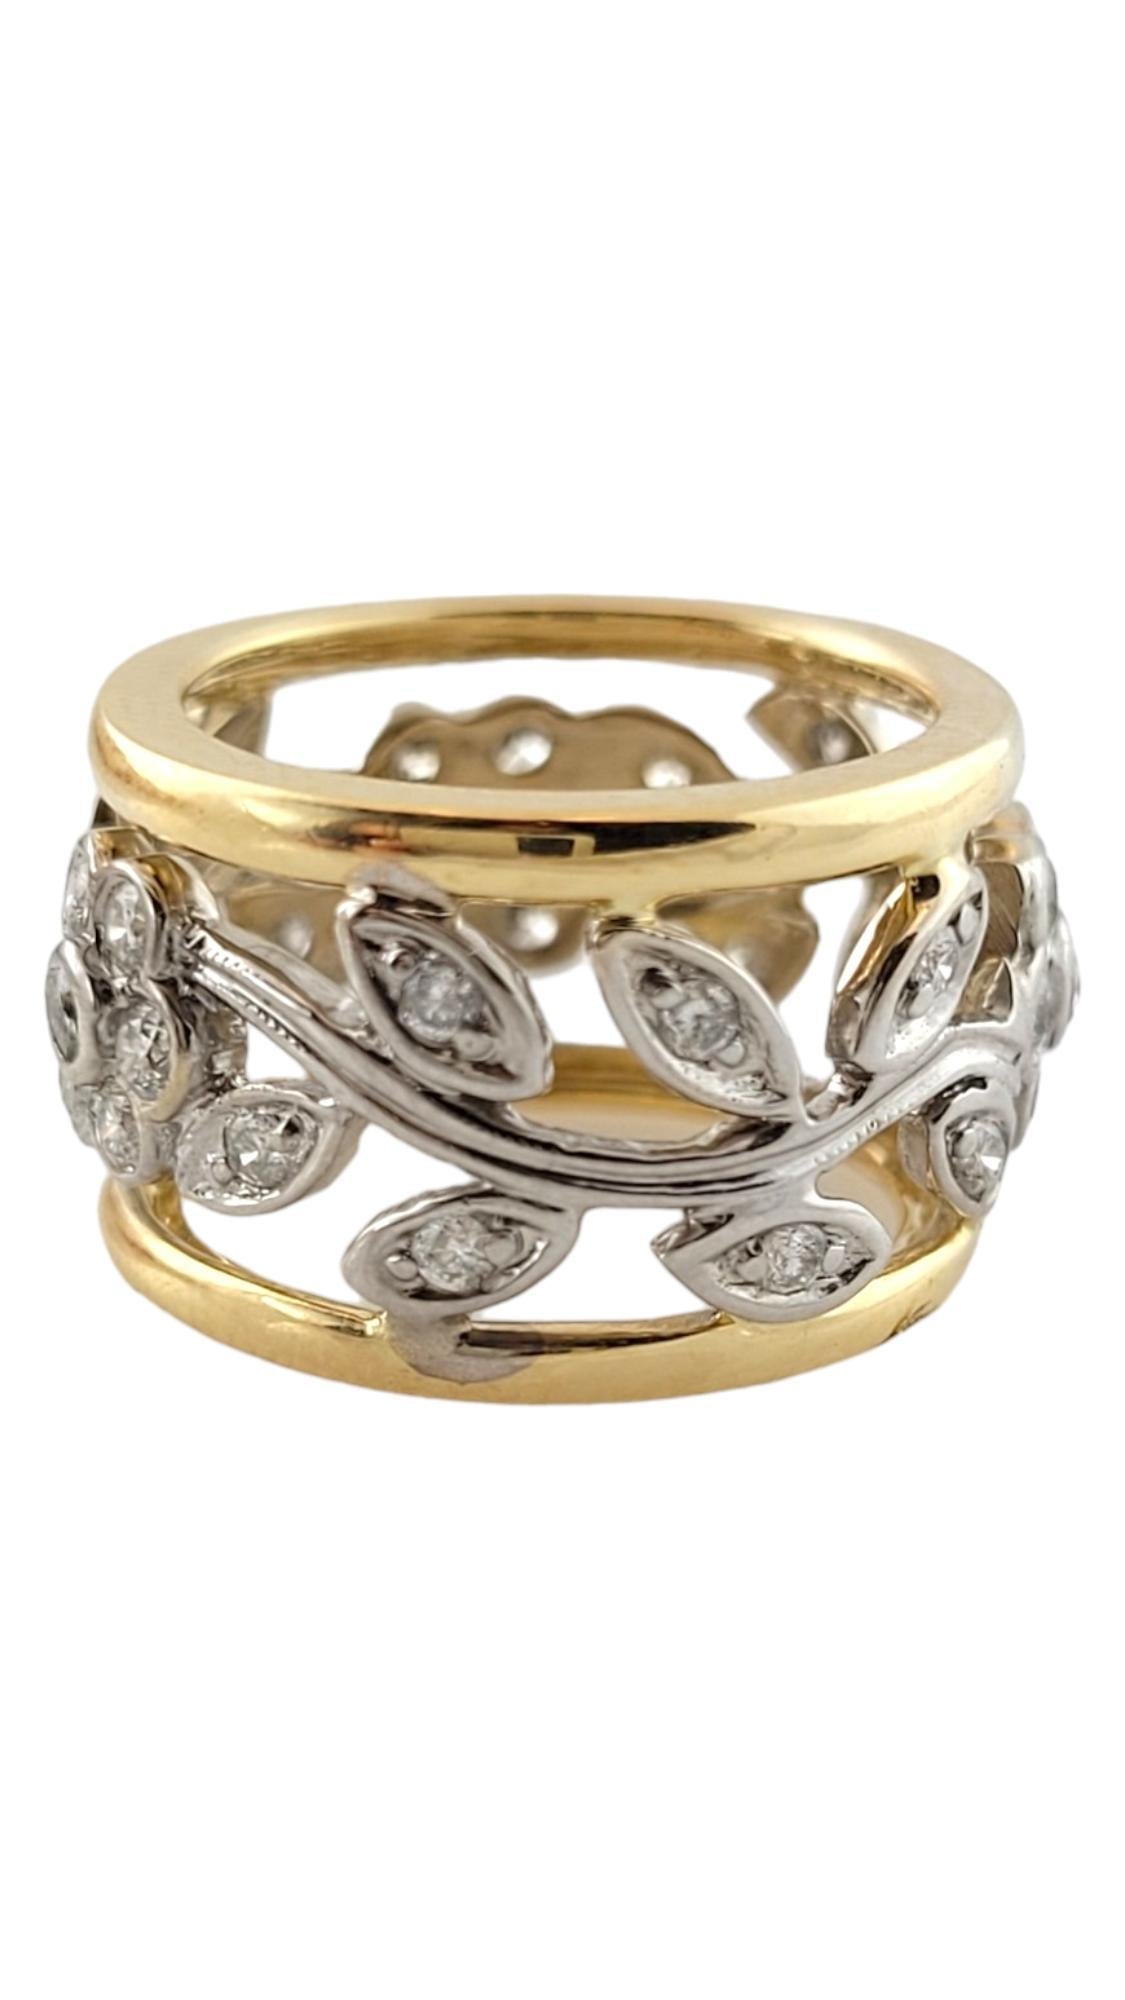 Vintage 14K Gelb und Weißgold Diamond Floral Ring Größe 3,5

Dieser wunderschöne Ring hat ein florales Muster aus 14-karätigem Weißgold, das von 14-karätigem Gelbgold eingefasst und mit 35 funkelnden Diamanten im Brillantschliff verziert